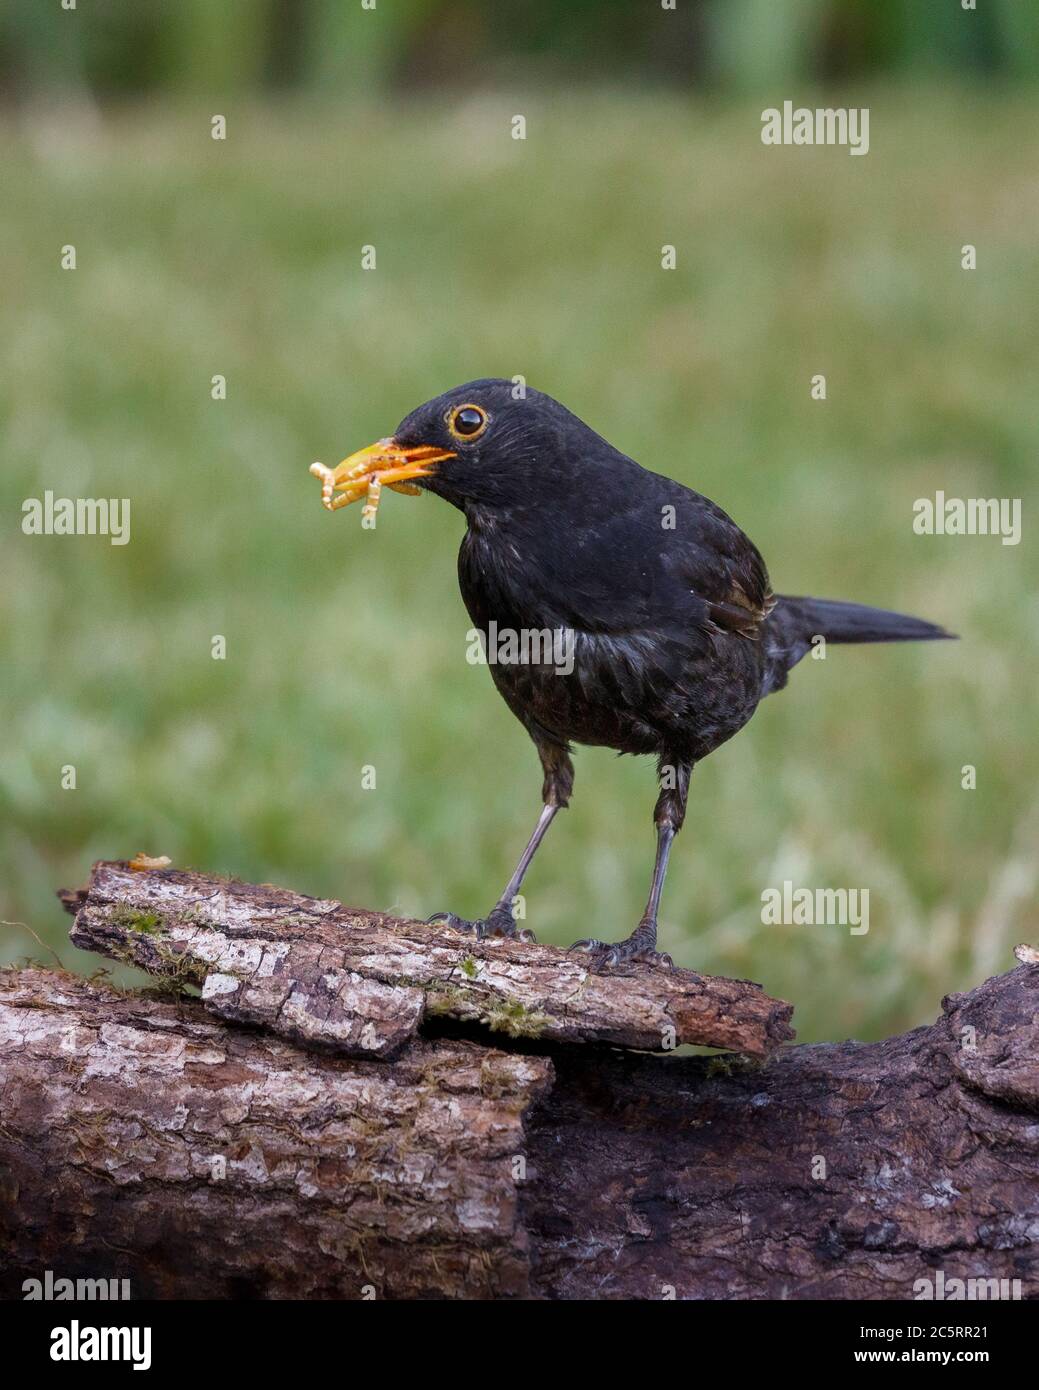 black bird on log with bug in beak Stock Photo